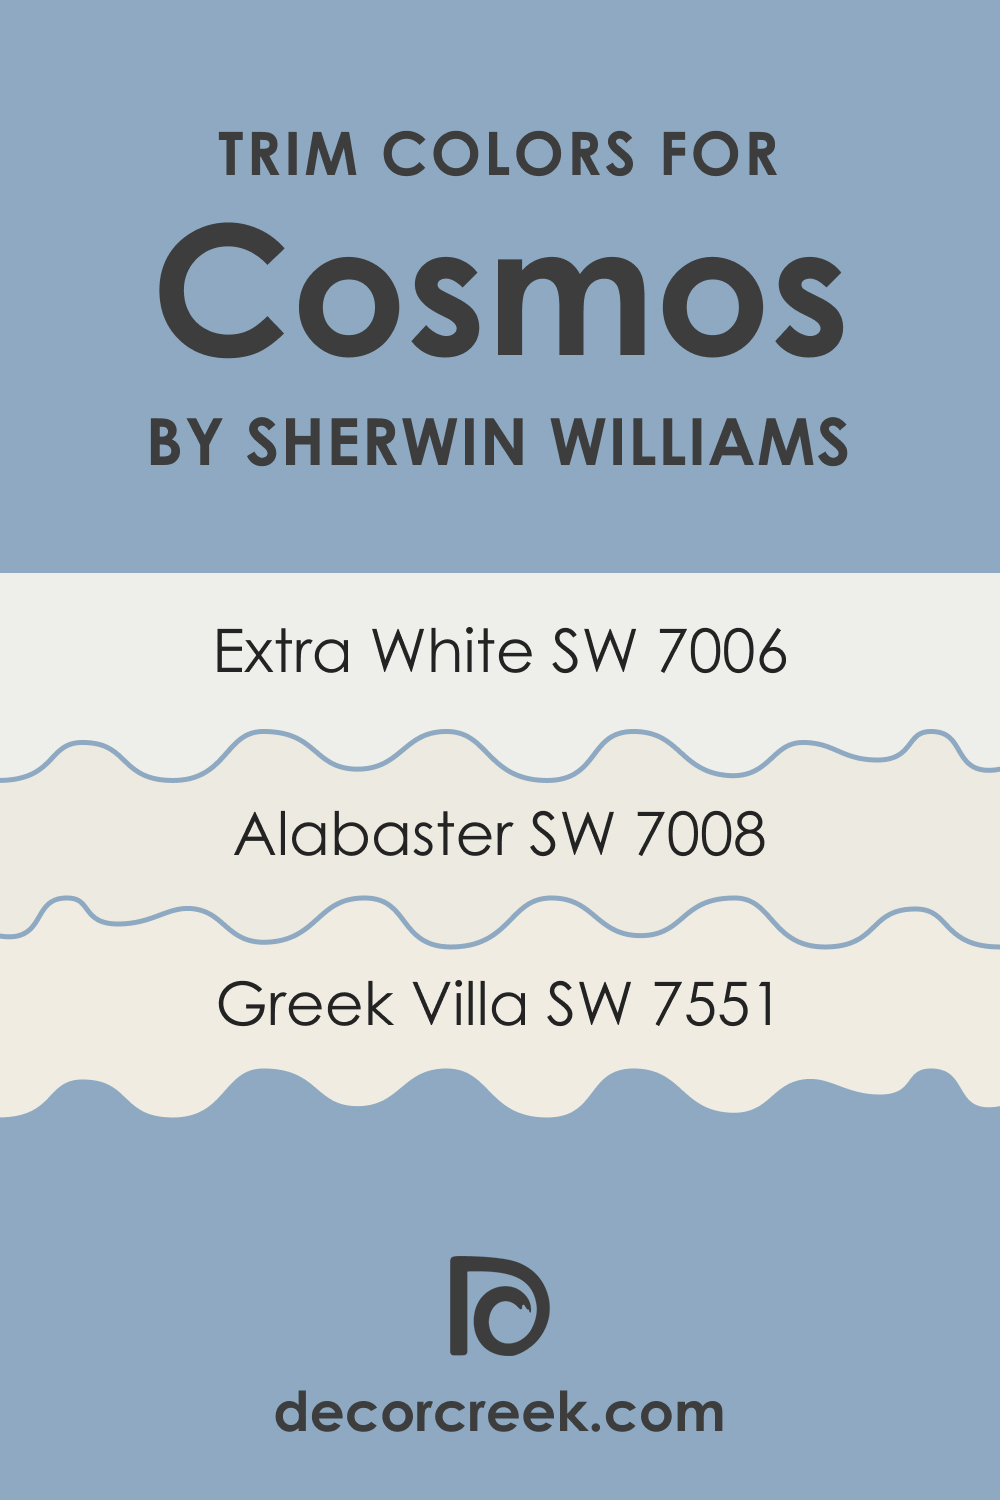 Trim Colors of SW 6528 Cosmos